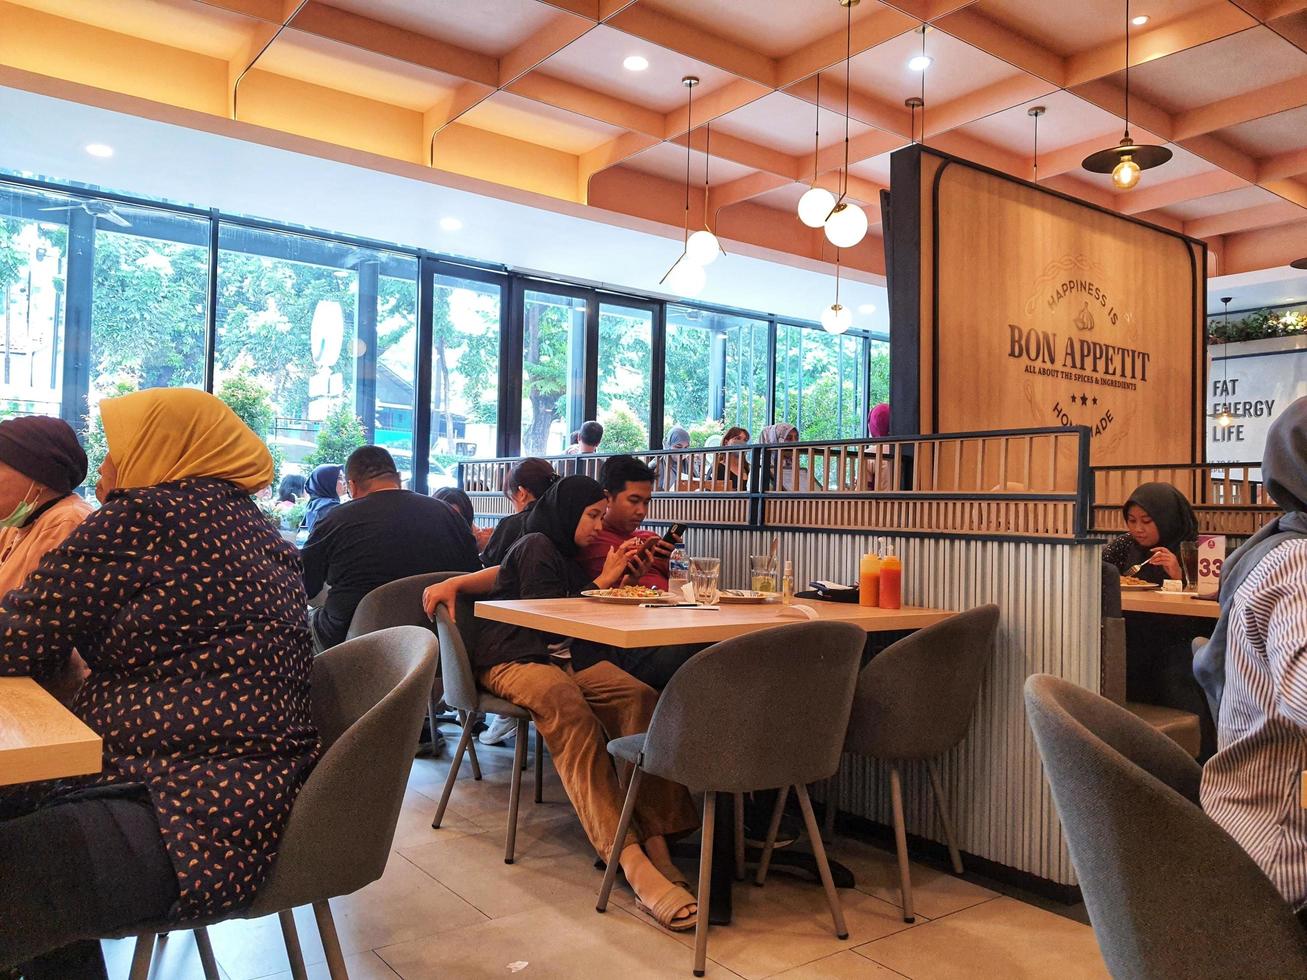 jakarta, indonesien im juli 2022. die atmosphäre des solaria restaurants, wo viele besucher familien sind, die zusammen essen. foto